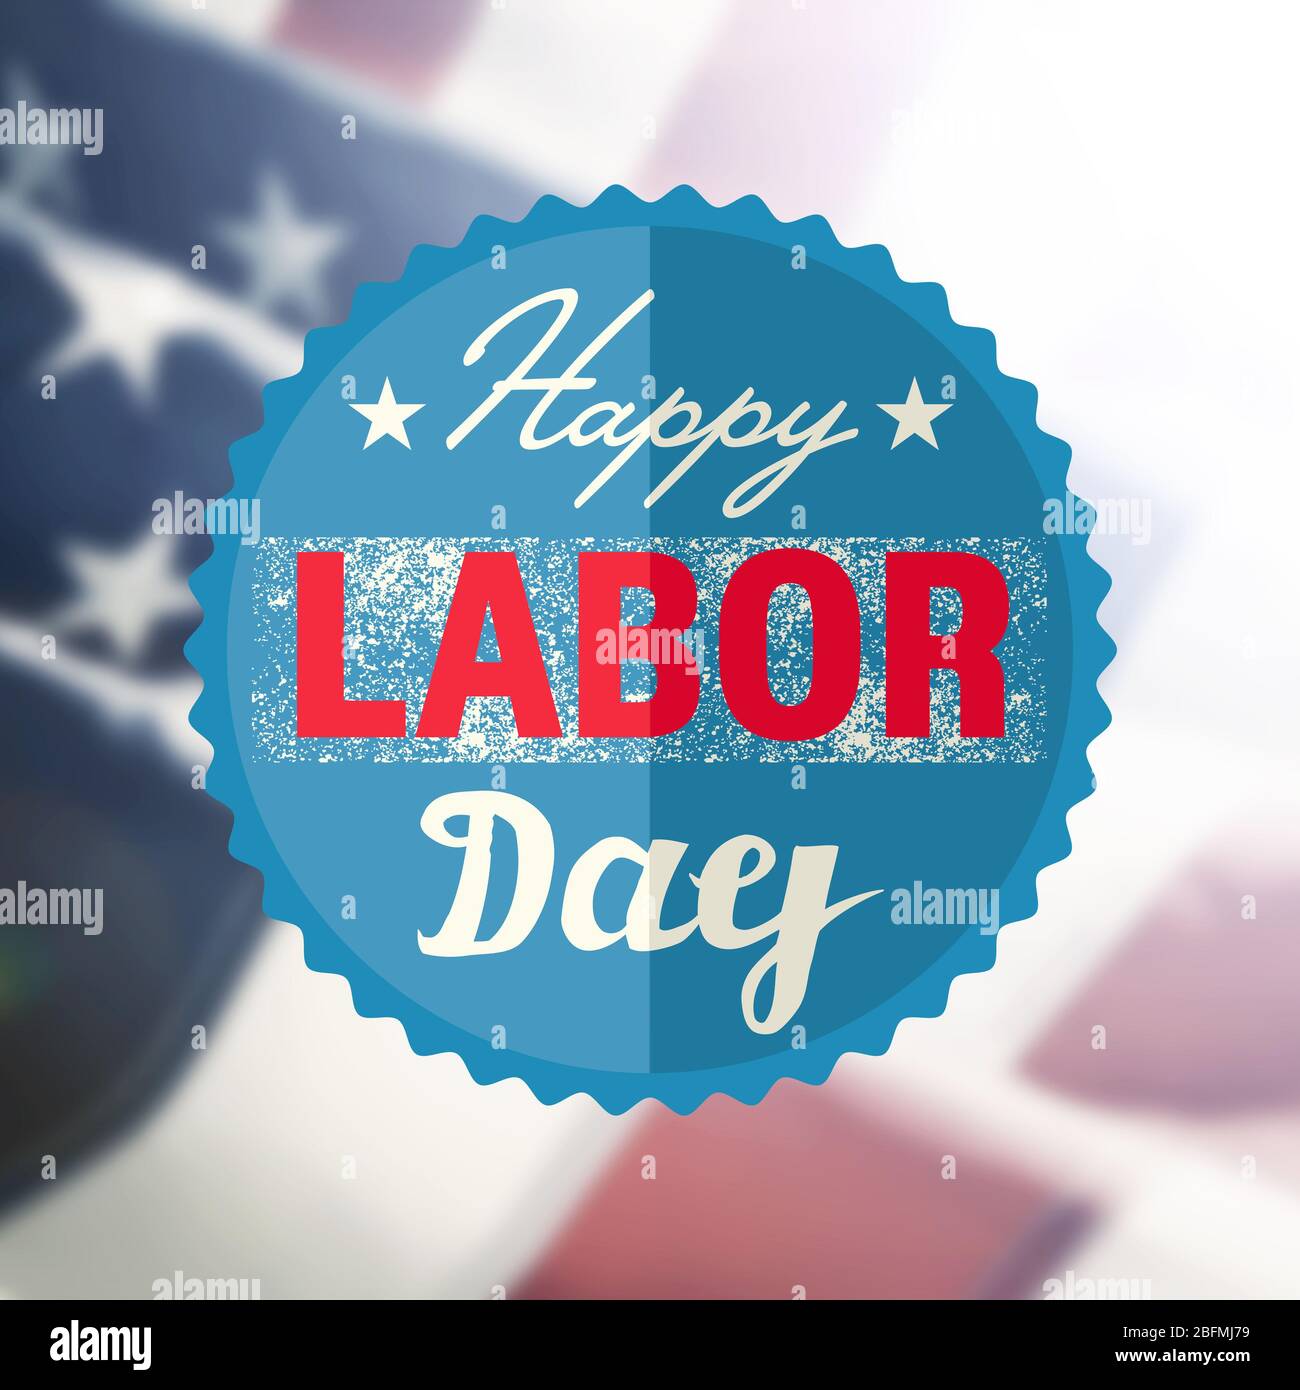 Happy Labor Day Schild auf USA Flagge Hintergrund Stockfoto